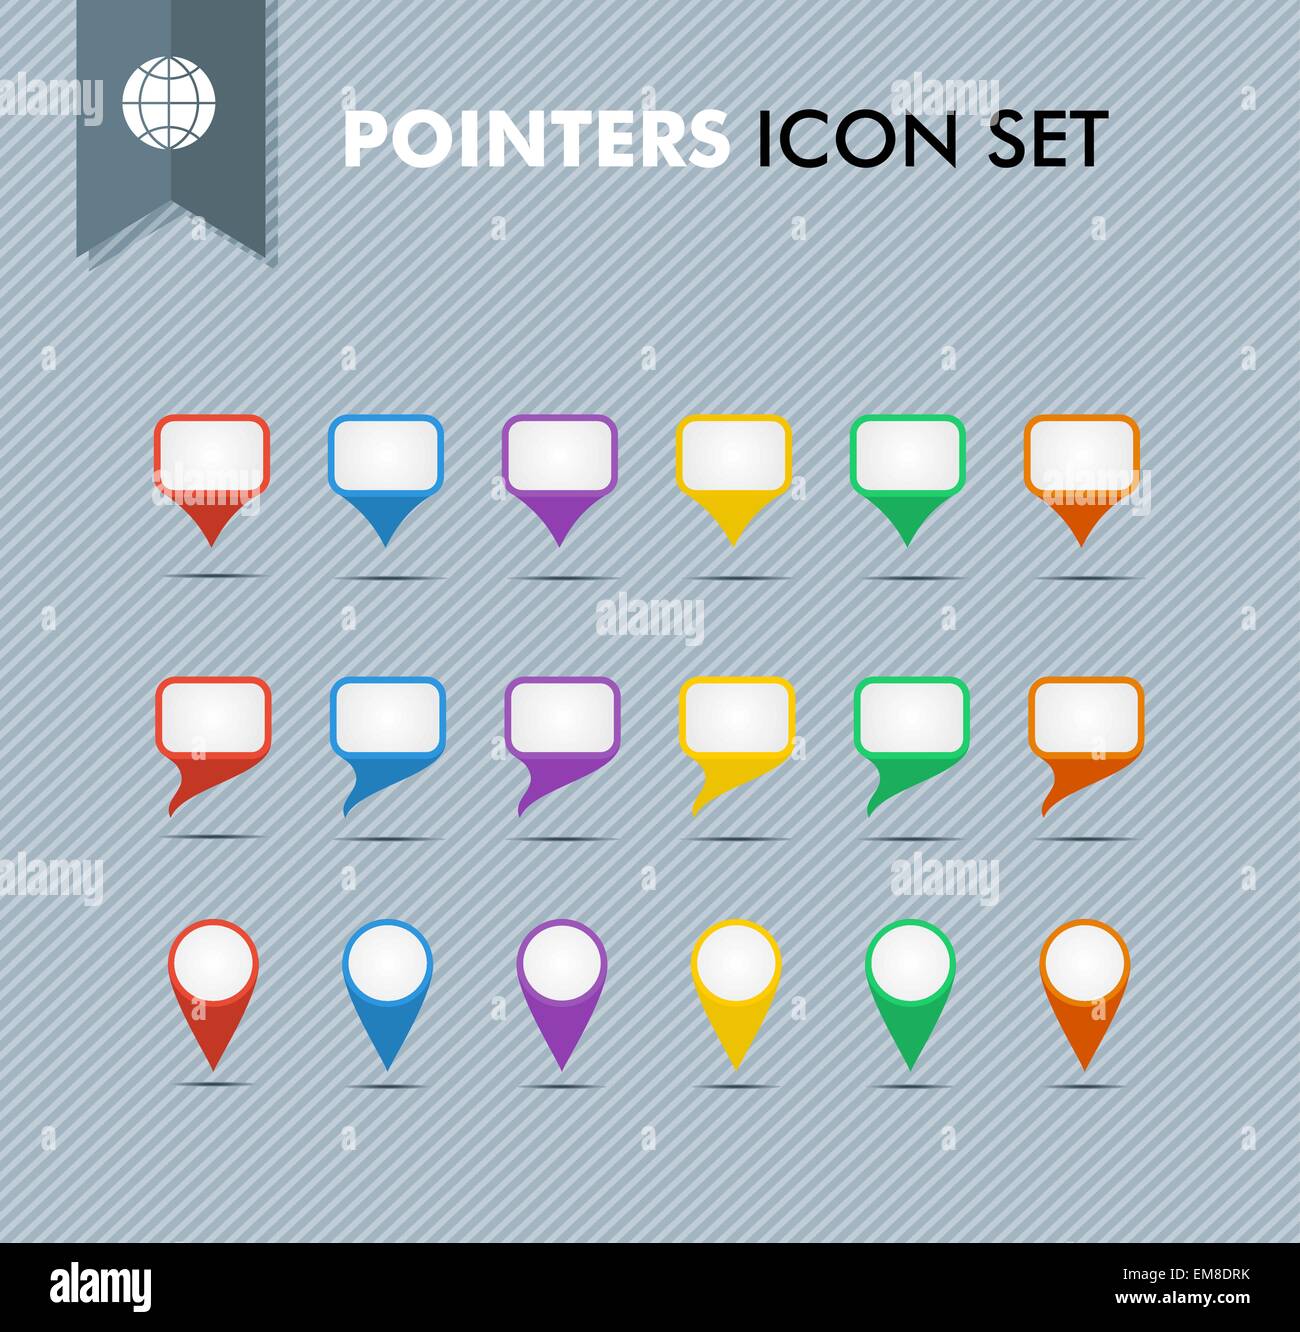 Les pointeurs et les bulles icons set EPS10 fichier vectoriel. Illustration de Vecteur